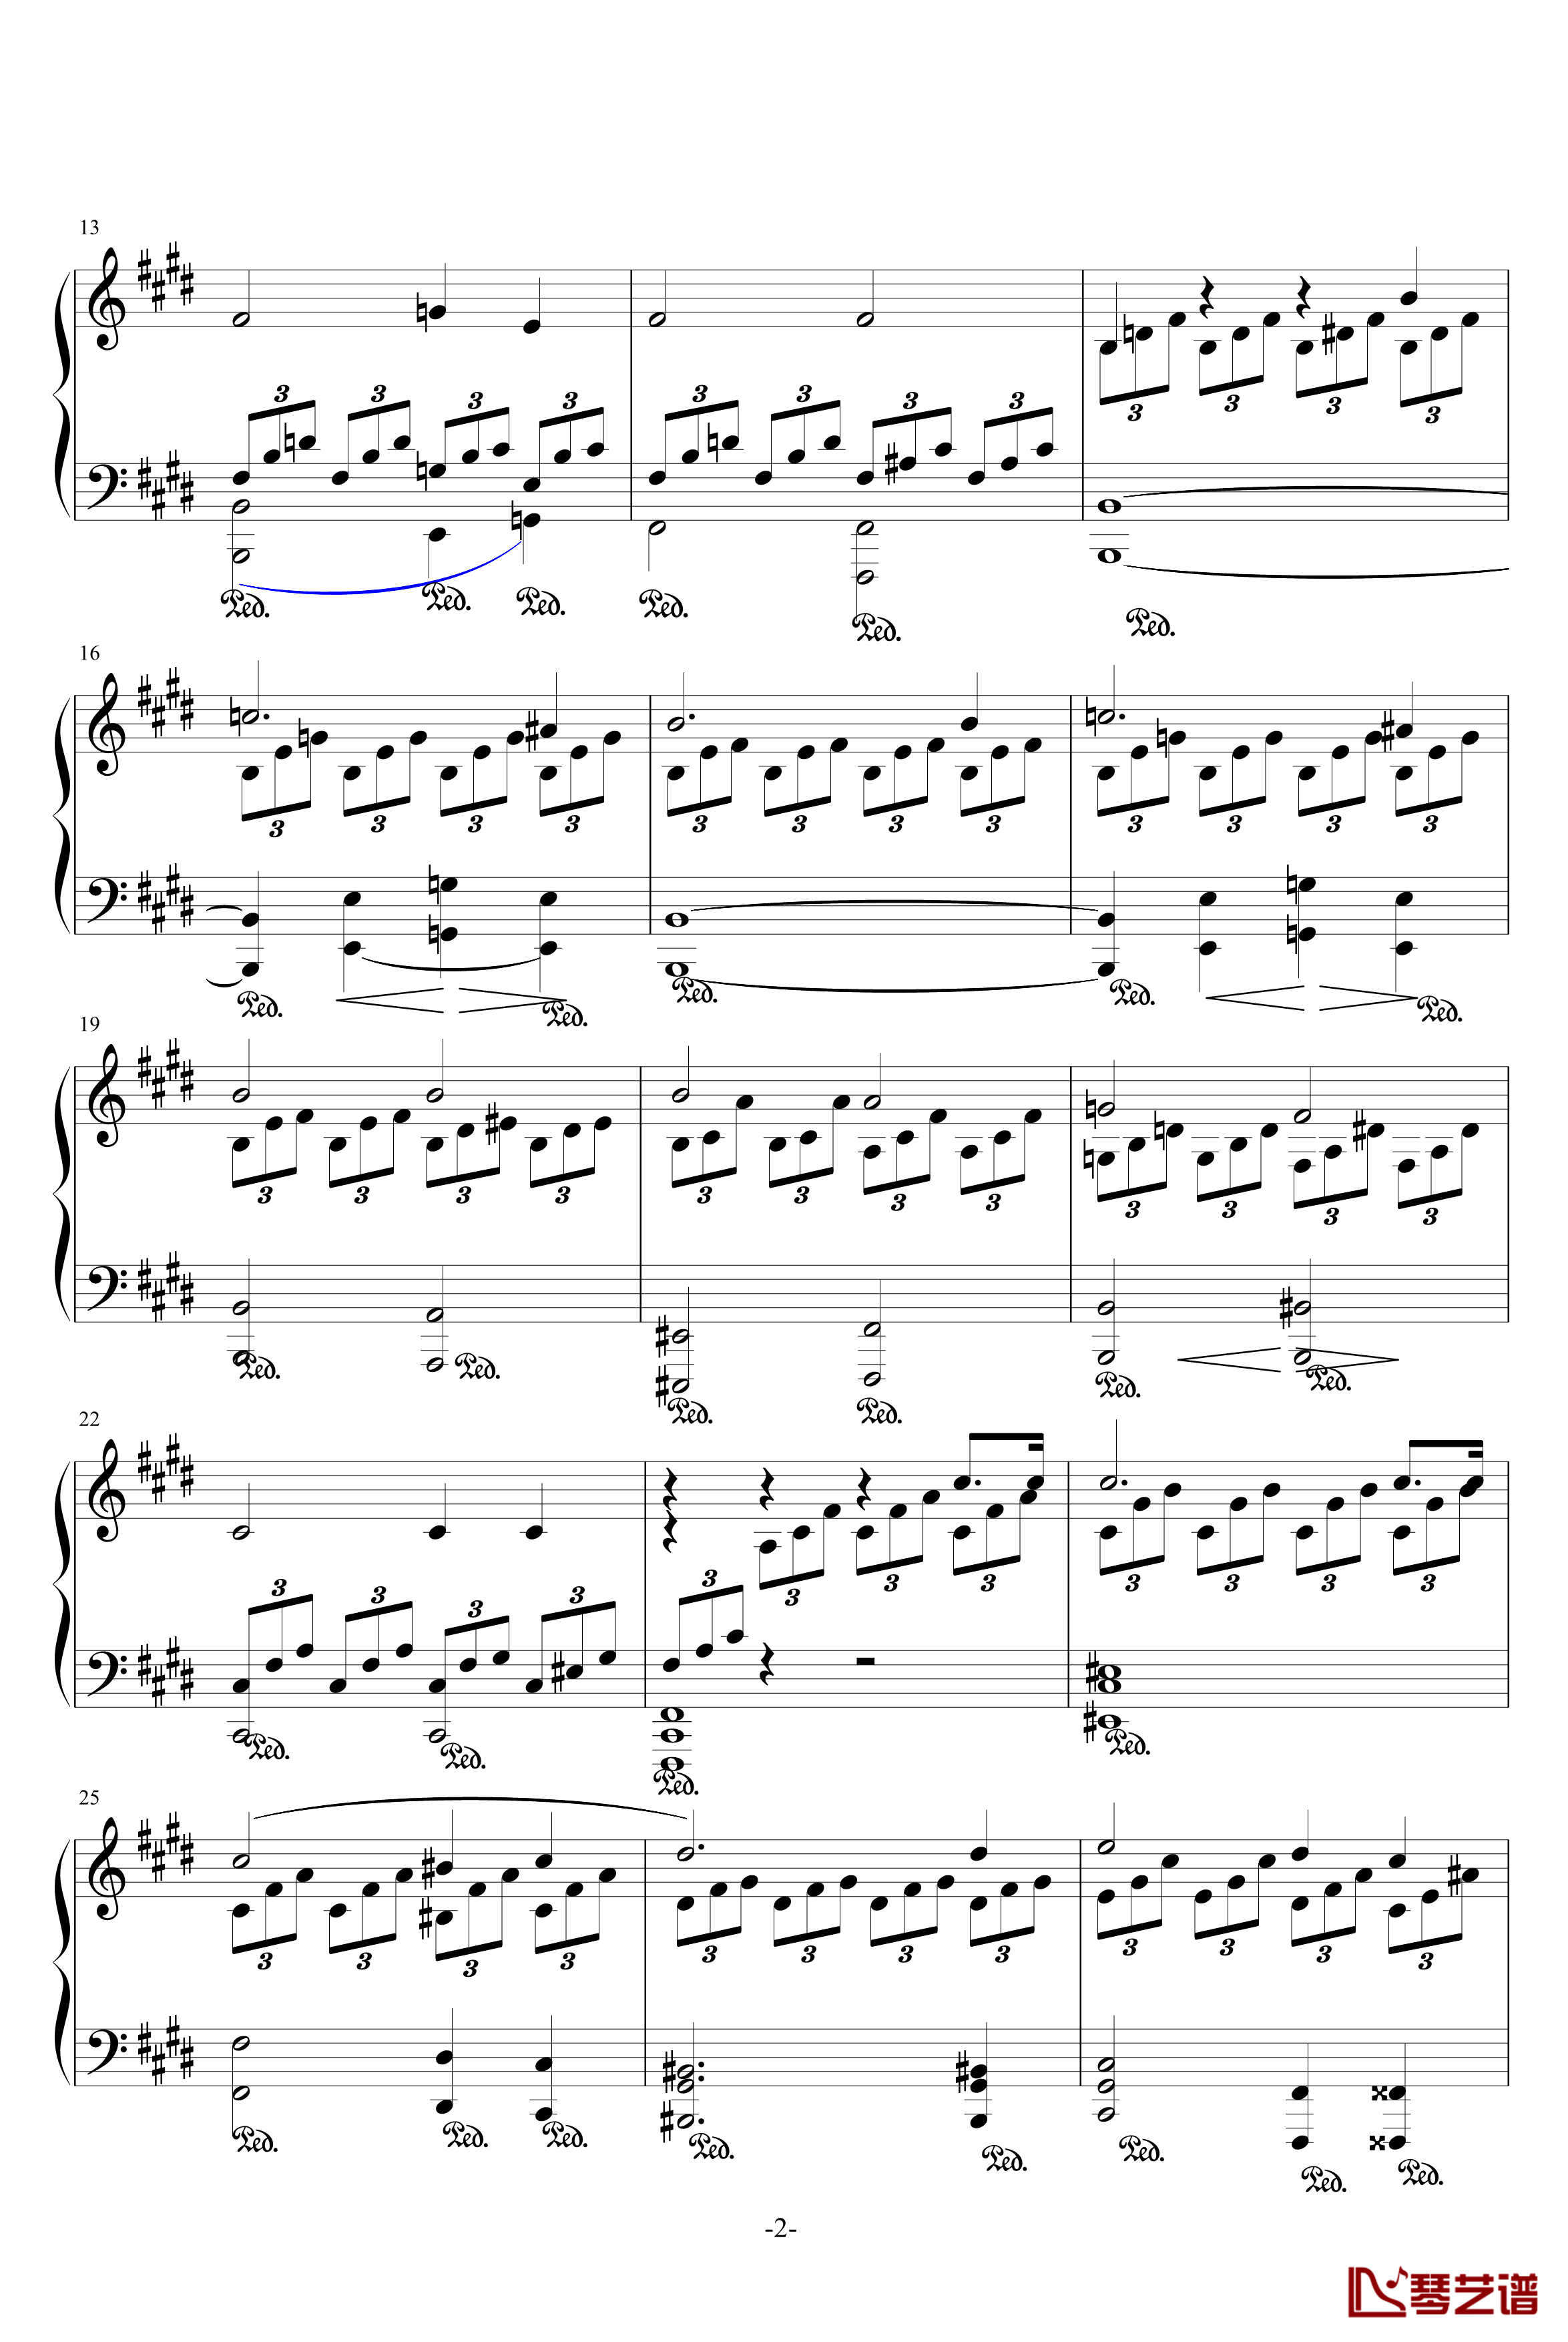 月光奏鸣曲钢琴谱-1，2，3乐章-贝多芬-beethoven